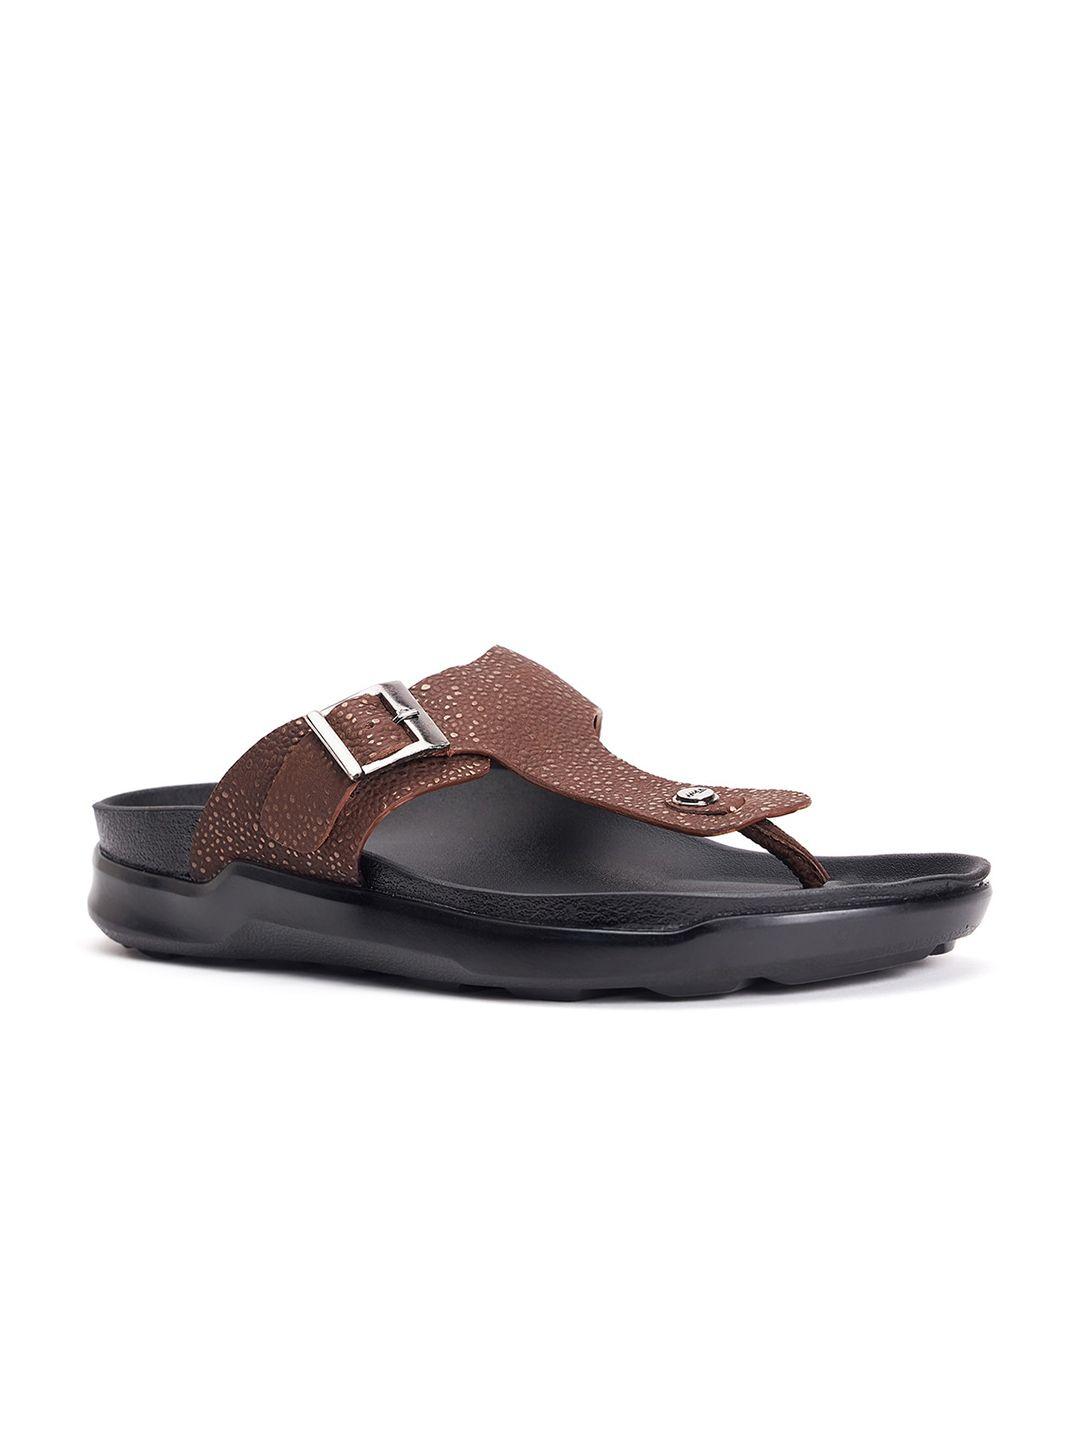 Hitz Men Textured Leather Comfort Sandals